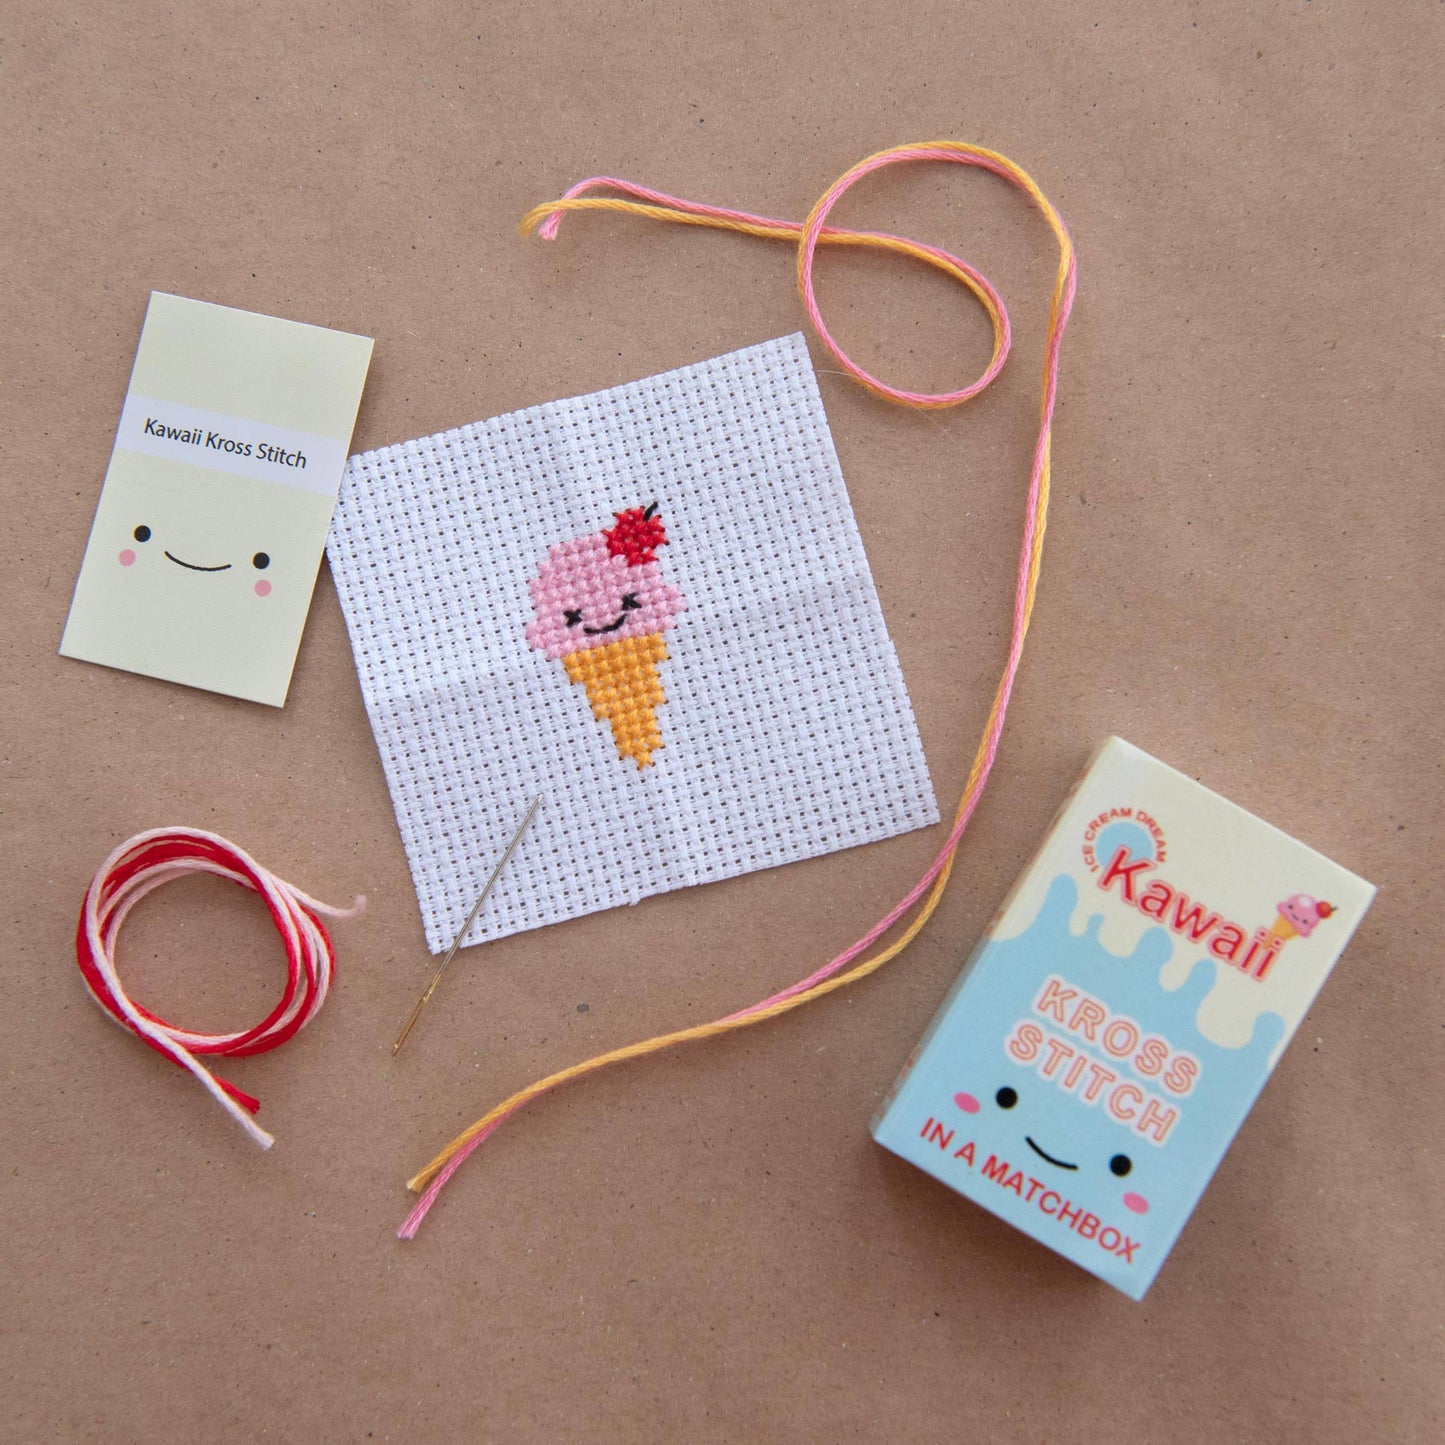 Kawaii Ice Cream Mini Cross Stitch Kit In A Matchbox